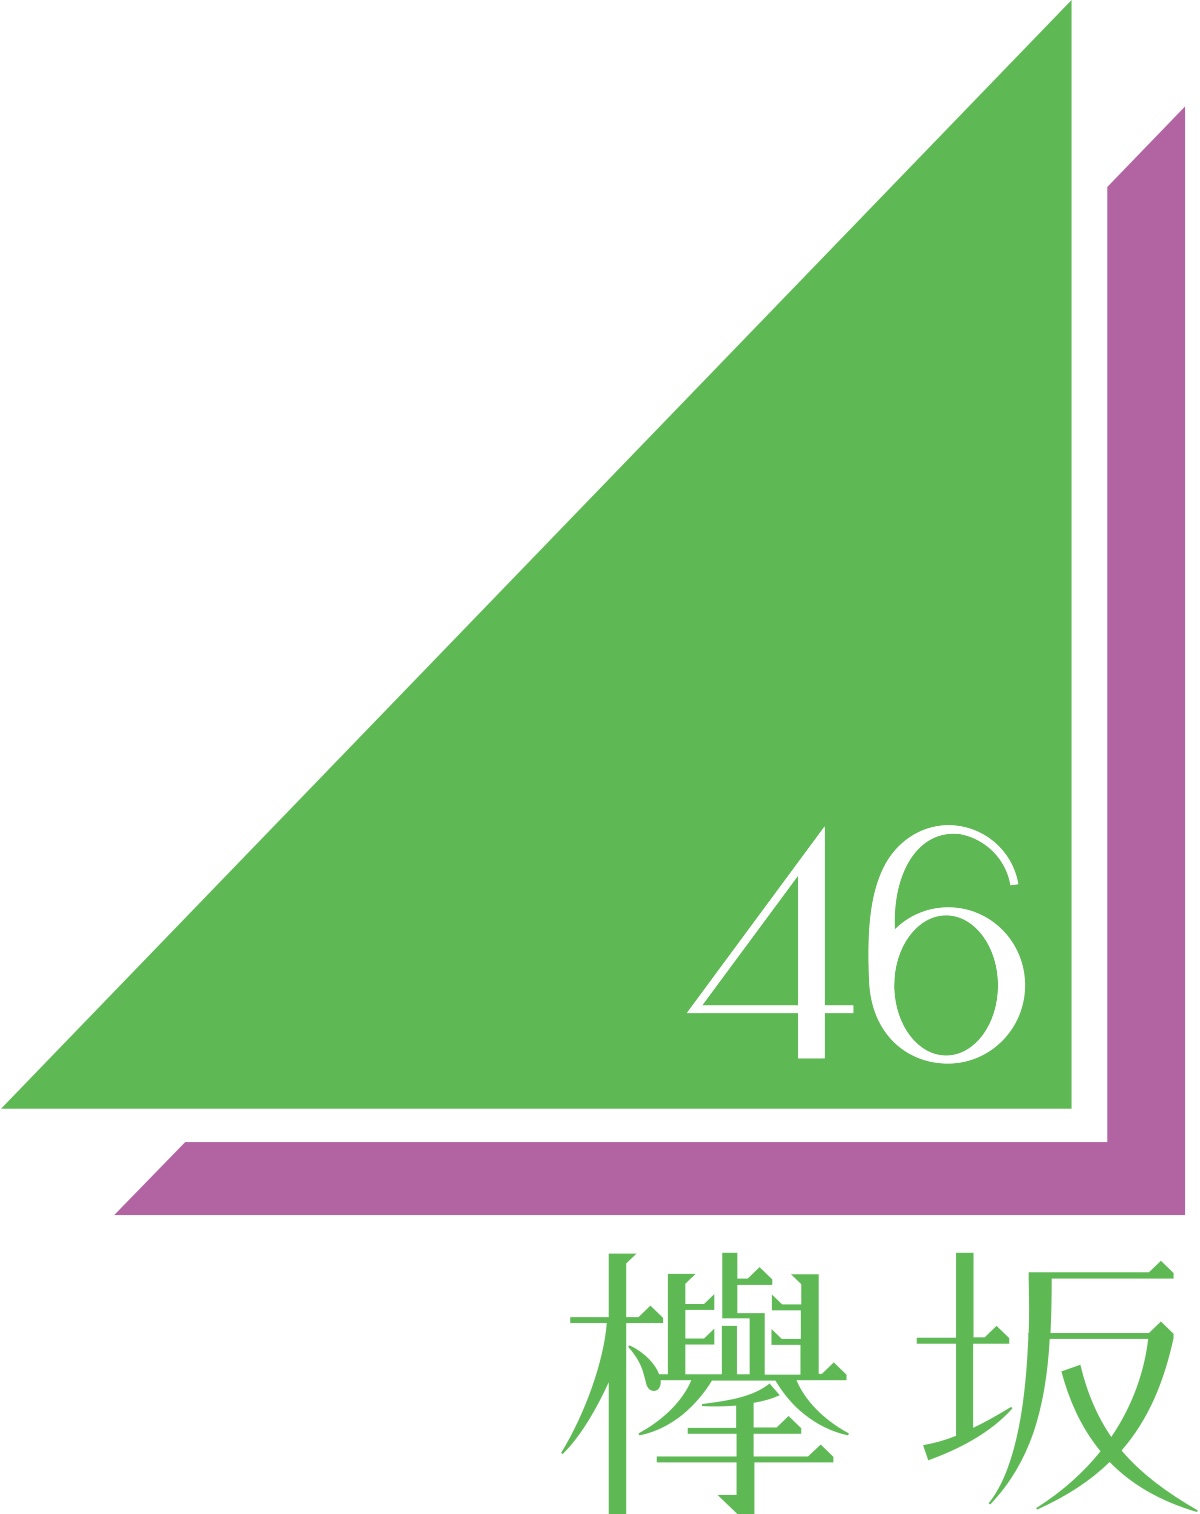 欅坂46ラストライブの日程はいつ チケットの値段や購入方法 どこであるかもまとめました コト旅